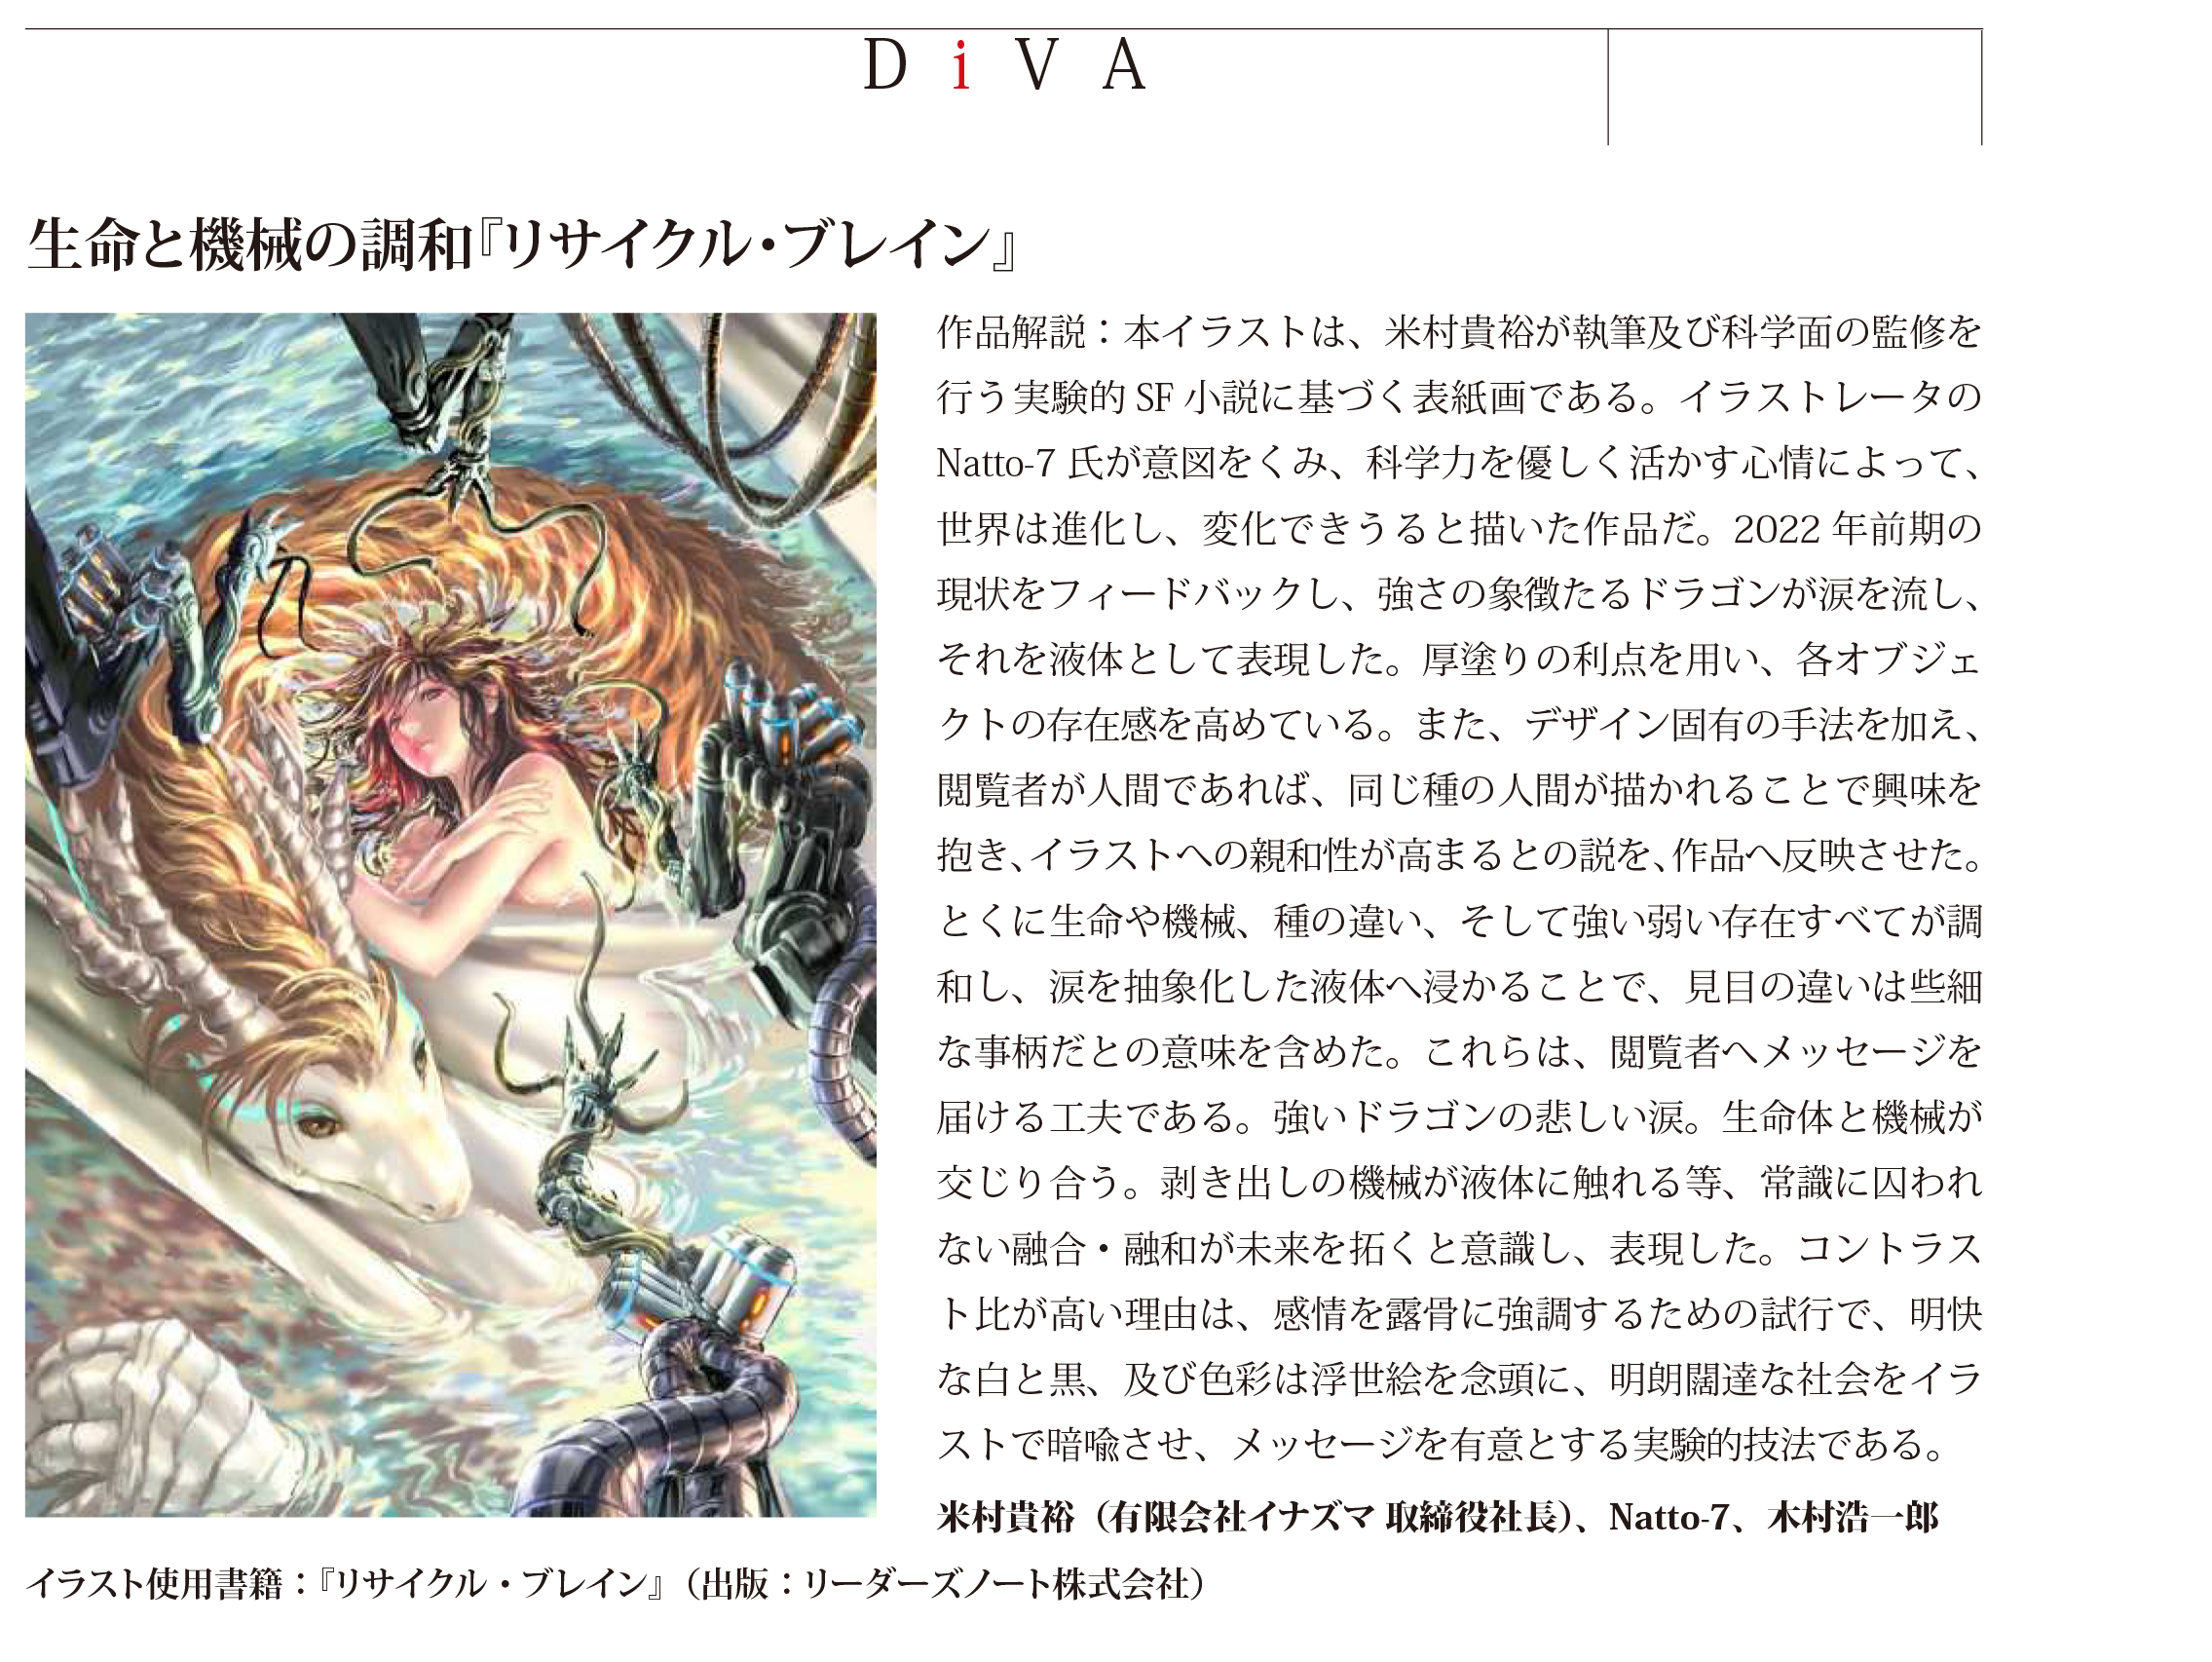 芸術科学会誌 DiVA第52号に掲載されたリサイクルブレインの表紙画